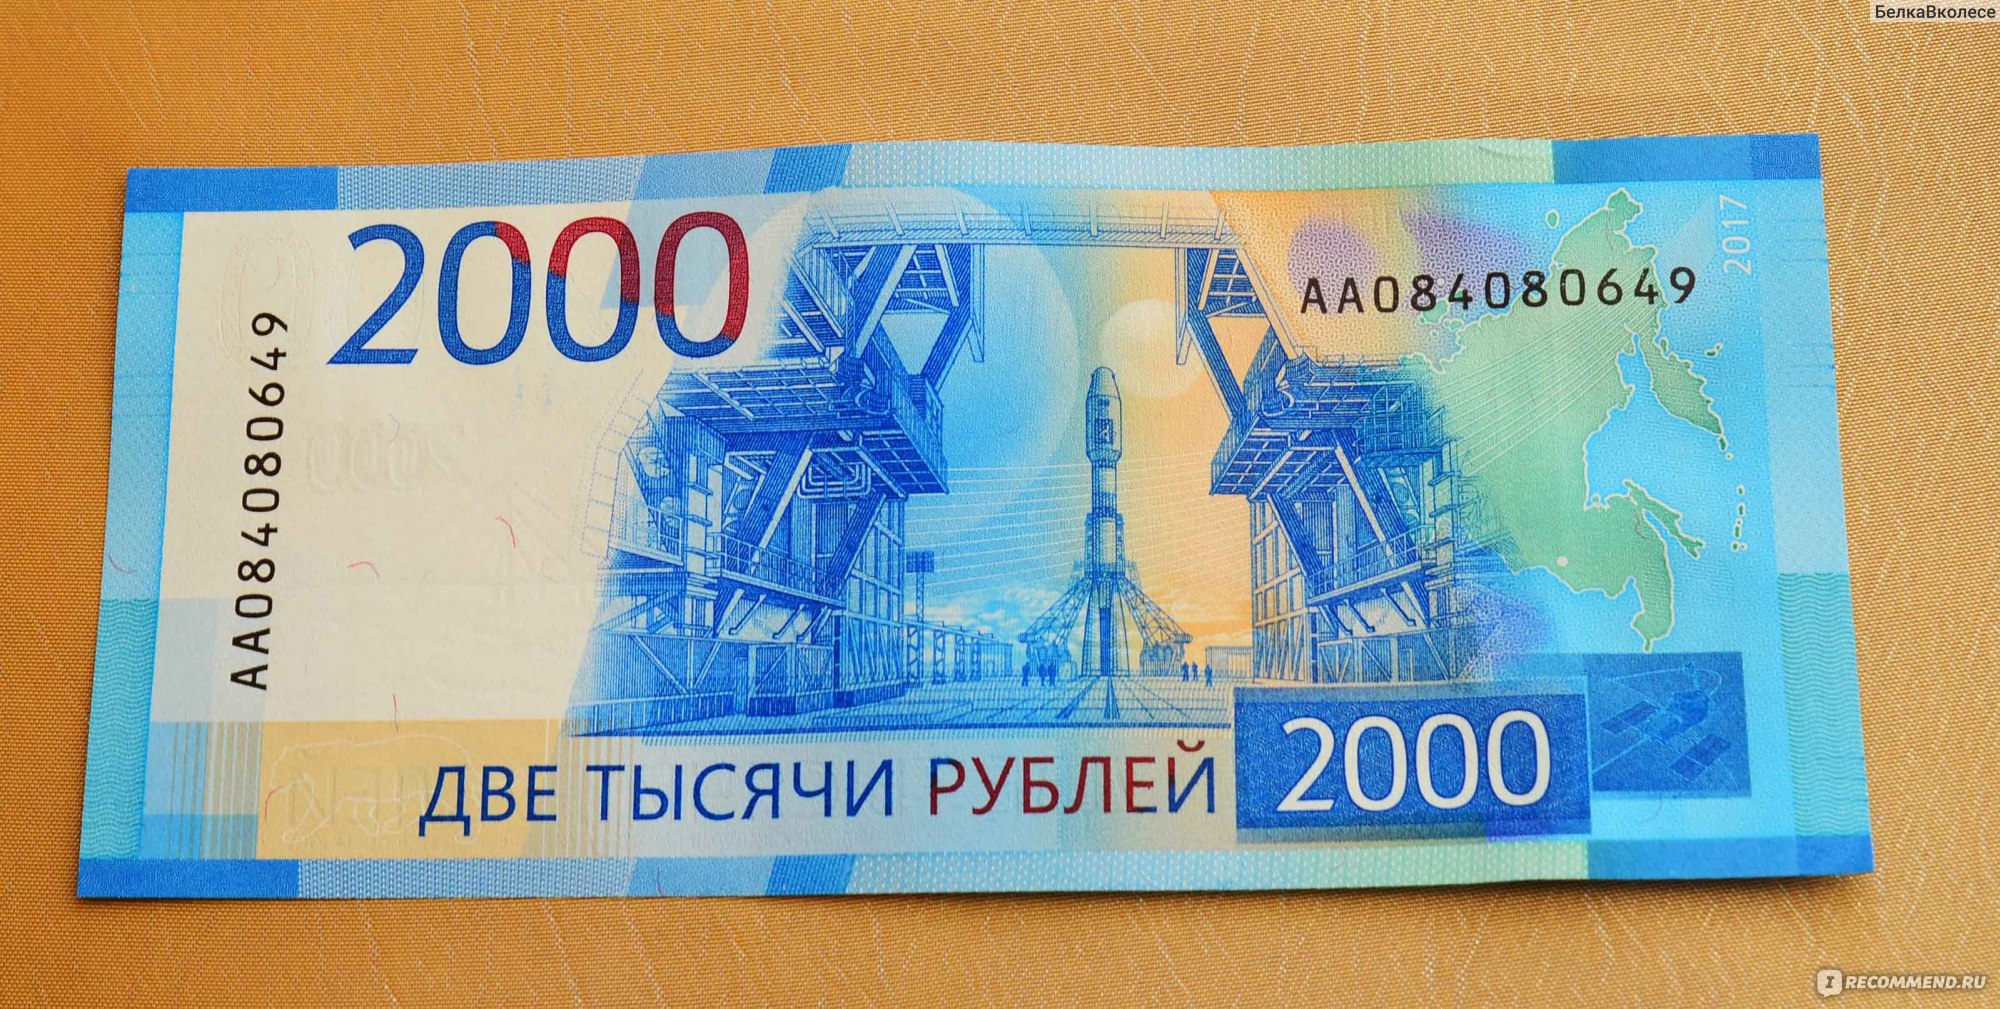 2000 рублей на карту. Деньги 2000 рублей. Банкнота 200 и 2000 рублей. 2000 Рублей бумажка. 200 Рублей и 2000 рублей.